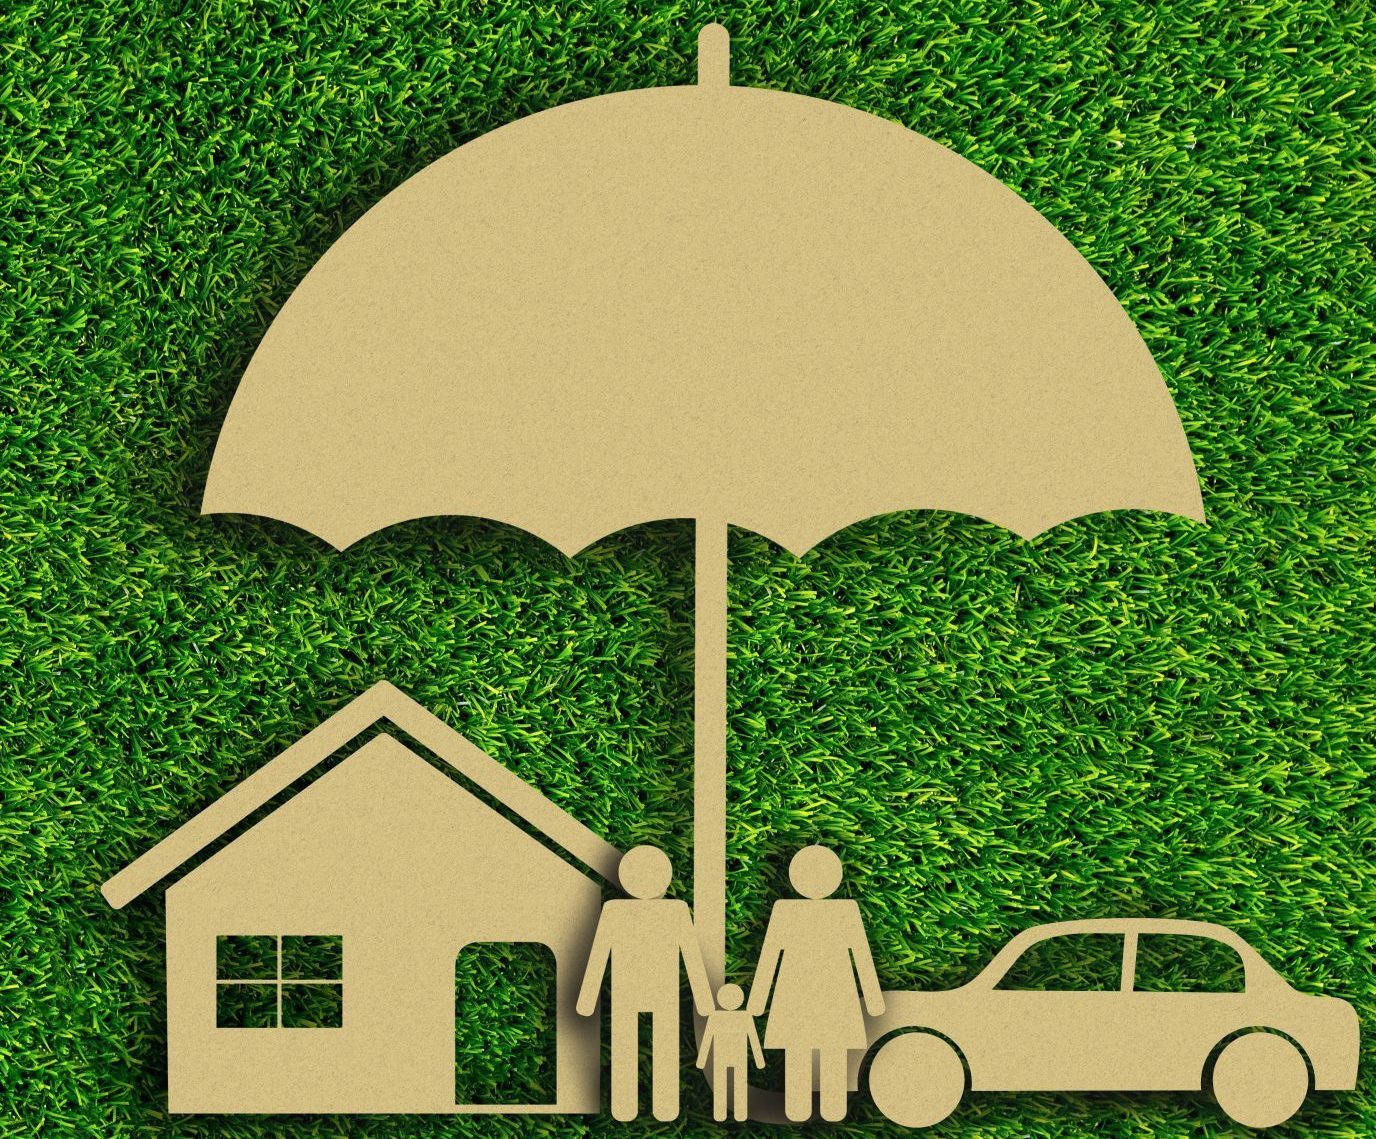 Umbrella Insurance Cover Photo